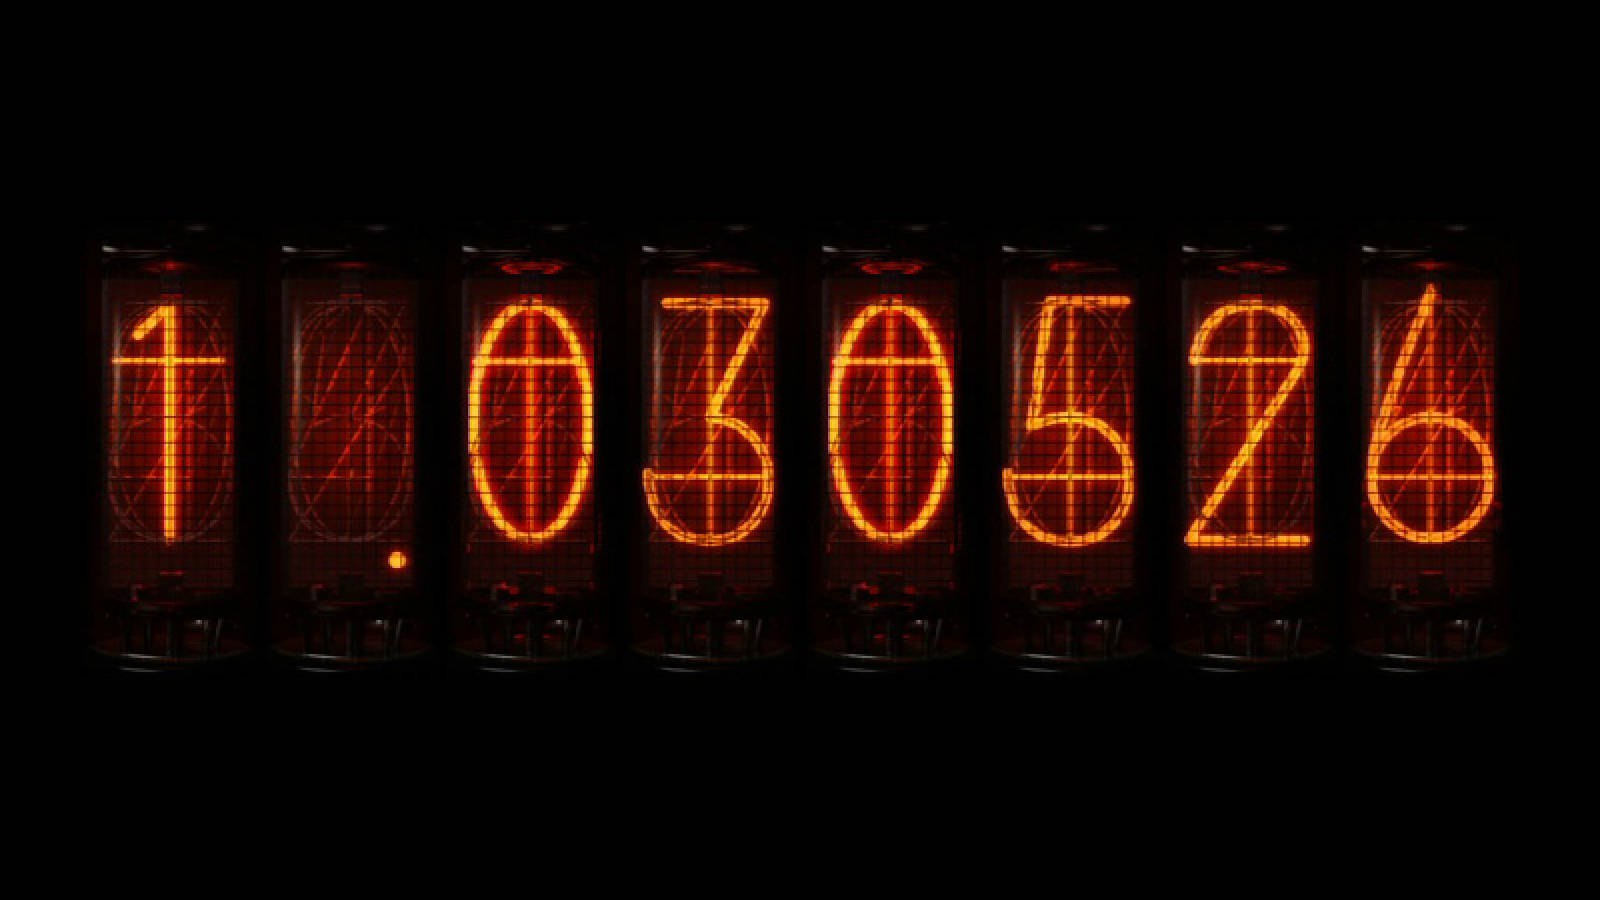 Steins Gate Digital Countdown Timer Background